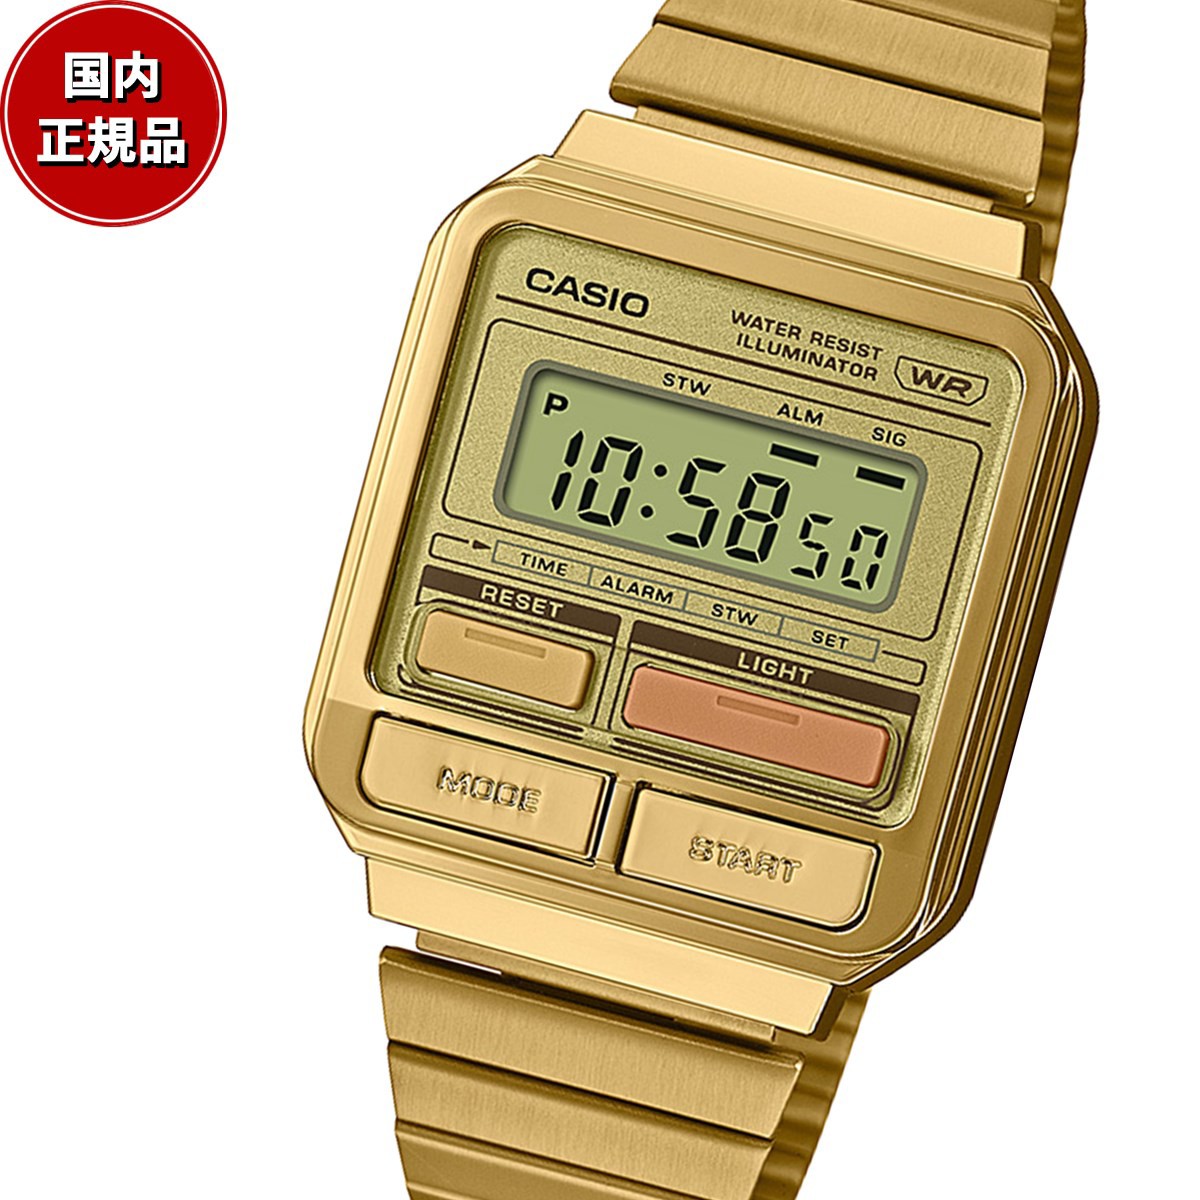 スタンダード STANDARD カシオ CASIO 限定モデル デジタル 腕時計 A120WEG-9AJF ゴールド